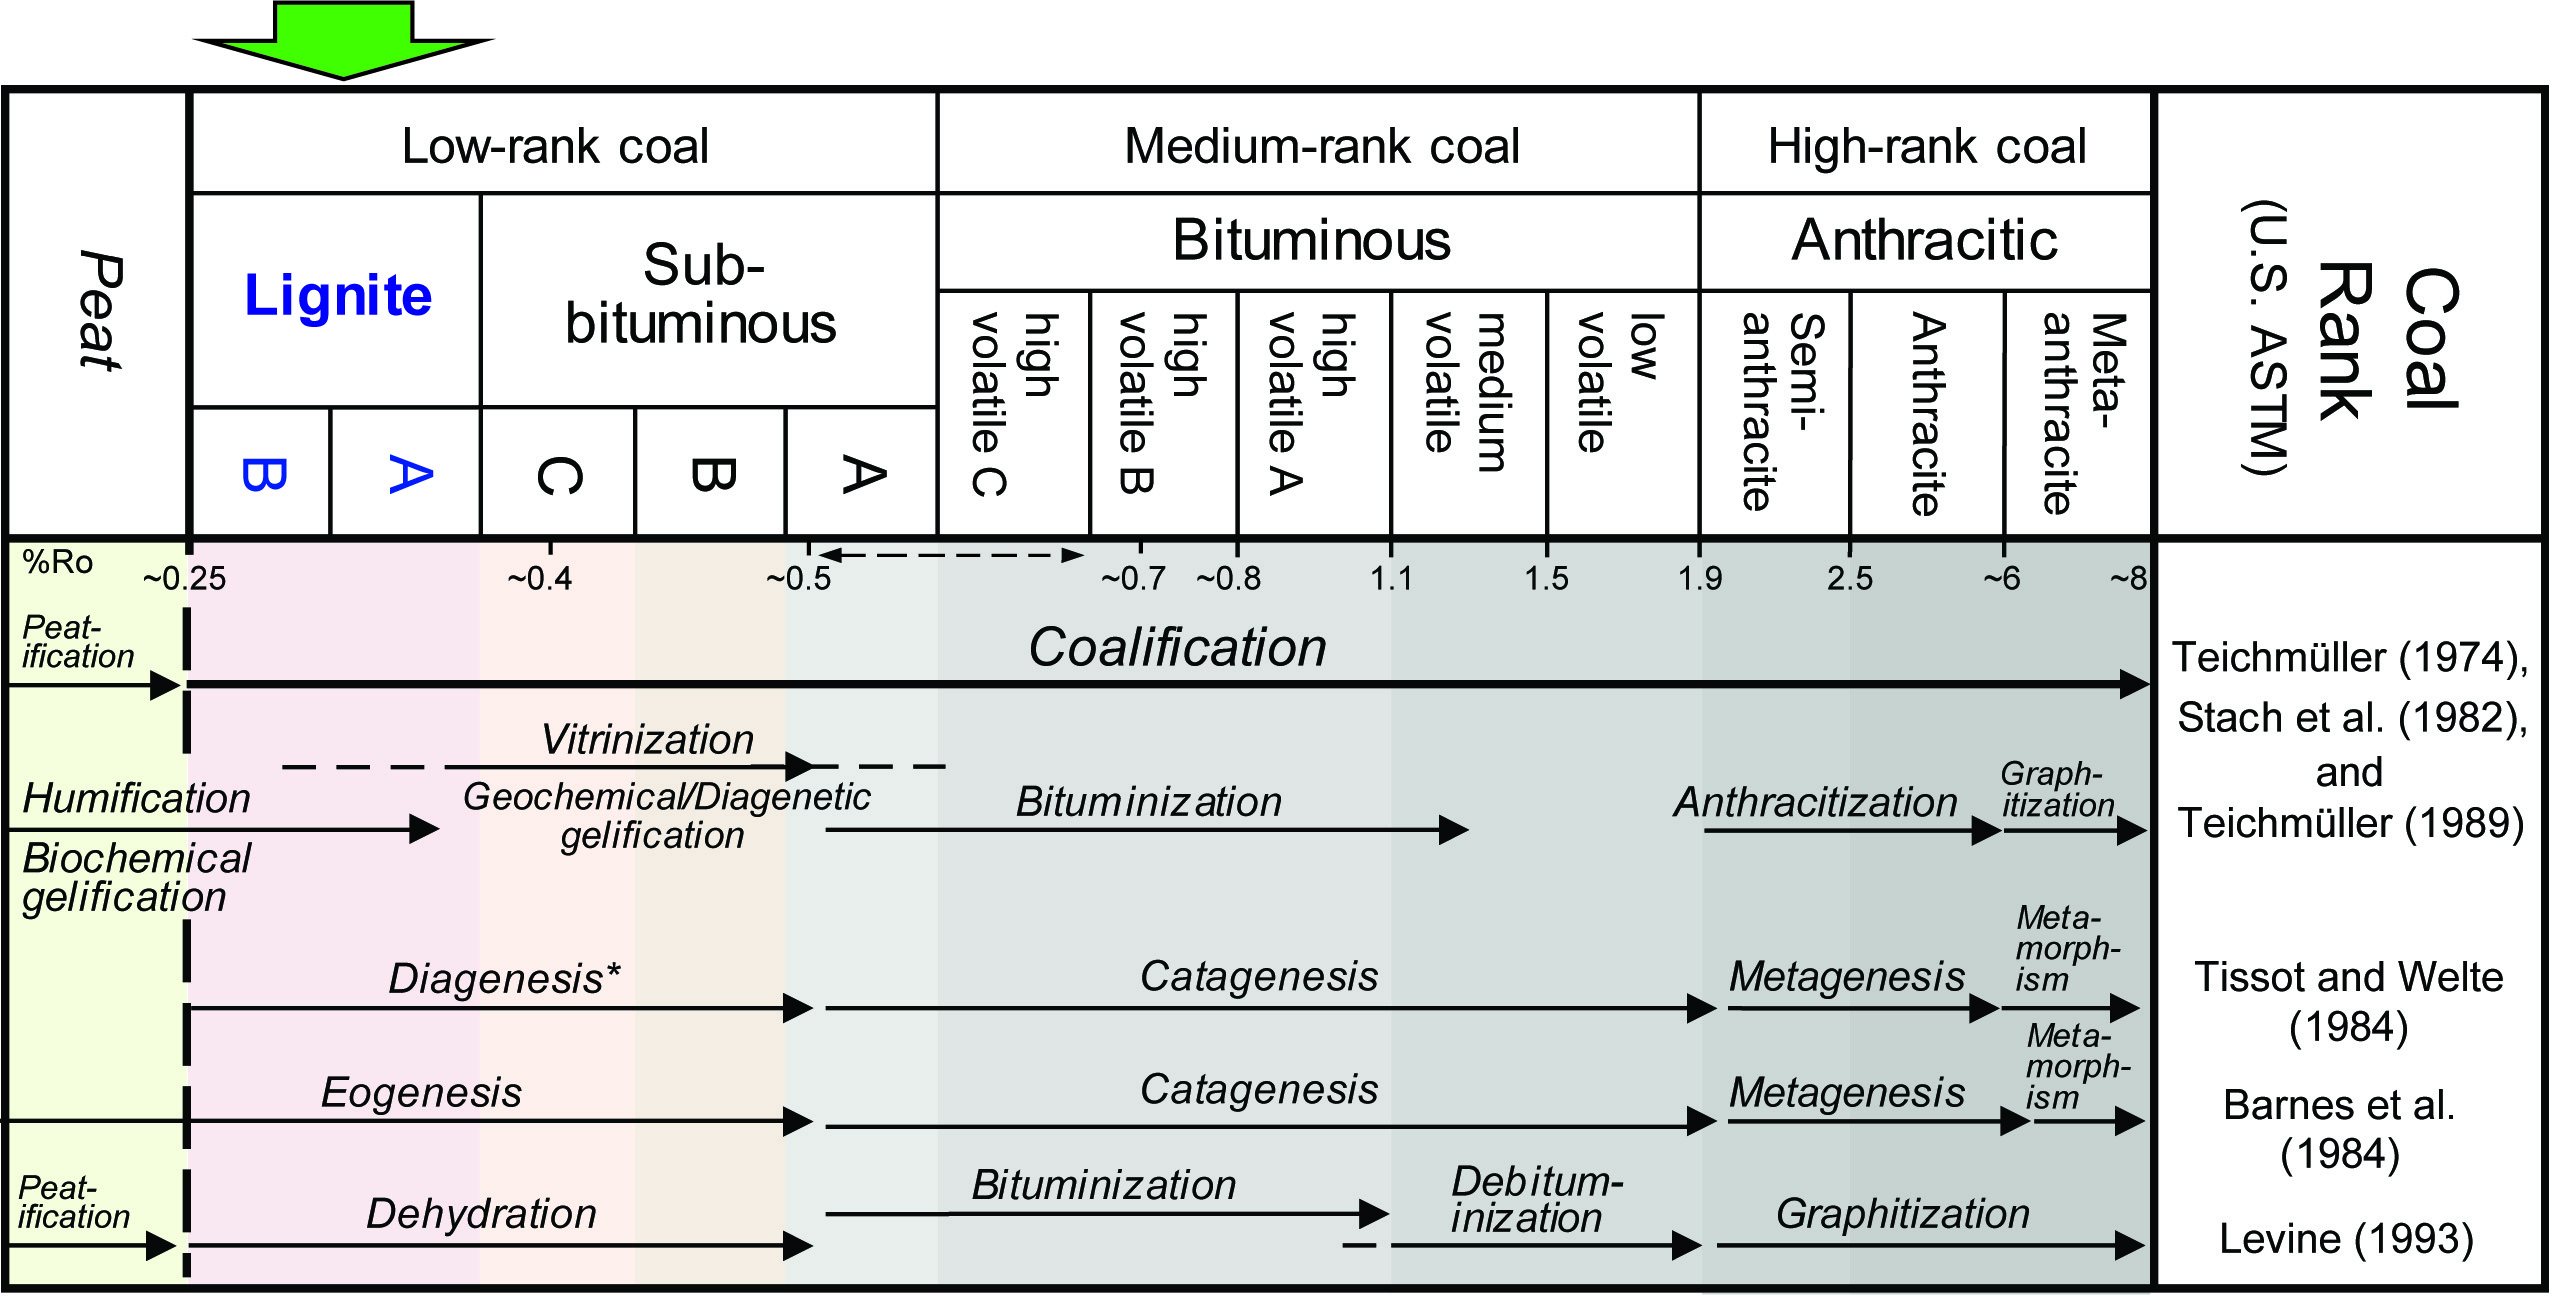 مراحل ذغال‌سازی در گزارش‌های مختلف نسبت به رتبه تقریبی زغال سنگ ایالات متحده ذکر شده است.  اصطلاح دیاژنز توسط تیسوت و ولت (1984) برای مراحل اولیه زغال‌سازی استفاده شد، اما برای کل فرآیند زغال‌سازی نیز استفاده شده است.  %Ro= بازتاب ویترینیت در روغن.  ٪ داده های Ro از Teichmüller و Teichmüller (1982).  در سیستم رتبه بندی ایالات متحده، مقادیر بازتاب ویترینیت بین رتبه های زیر قیری A و C قیر فرار بالا همپوشانی دارند که در اینجا به صورت خط چین نشان داده شده است.